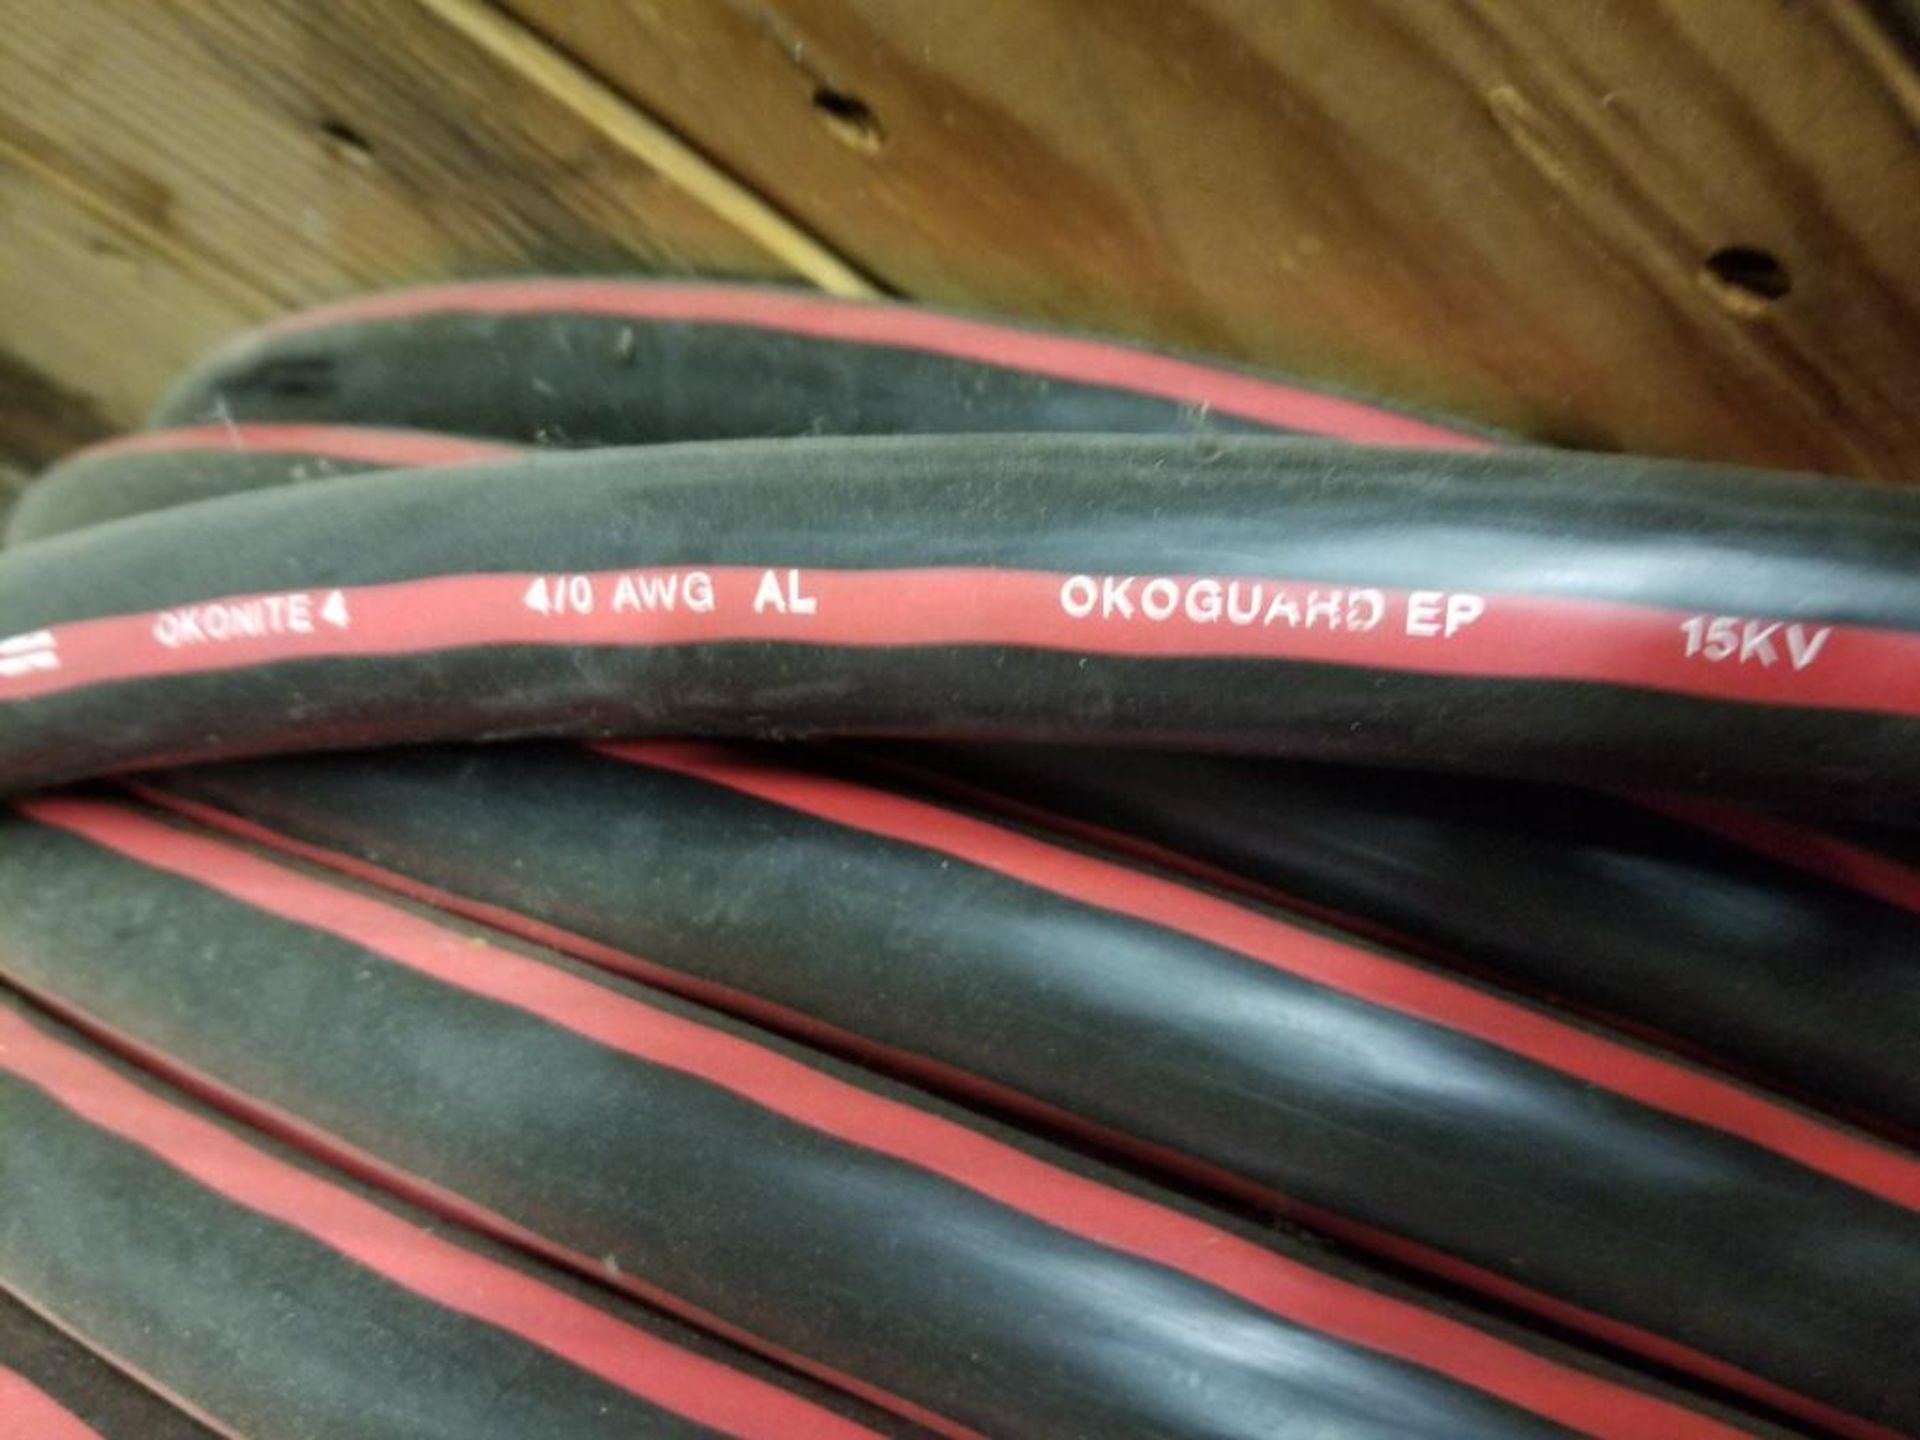 Spool of Okonite Okoguard wire . Model EPR-SC220-030. 15kV. Catalog 160-23-3081. - Image 3 of 9